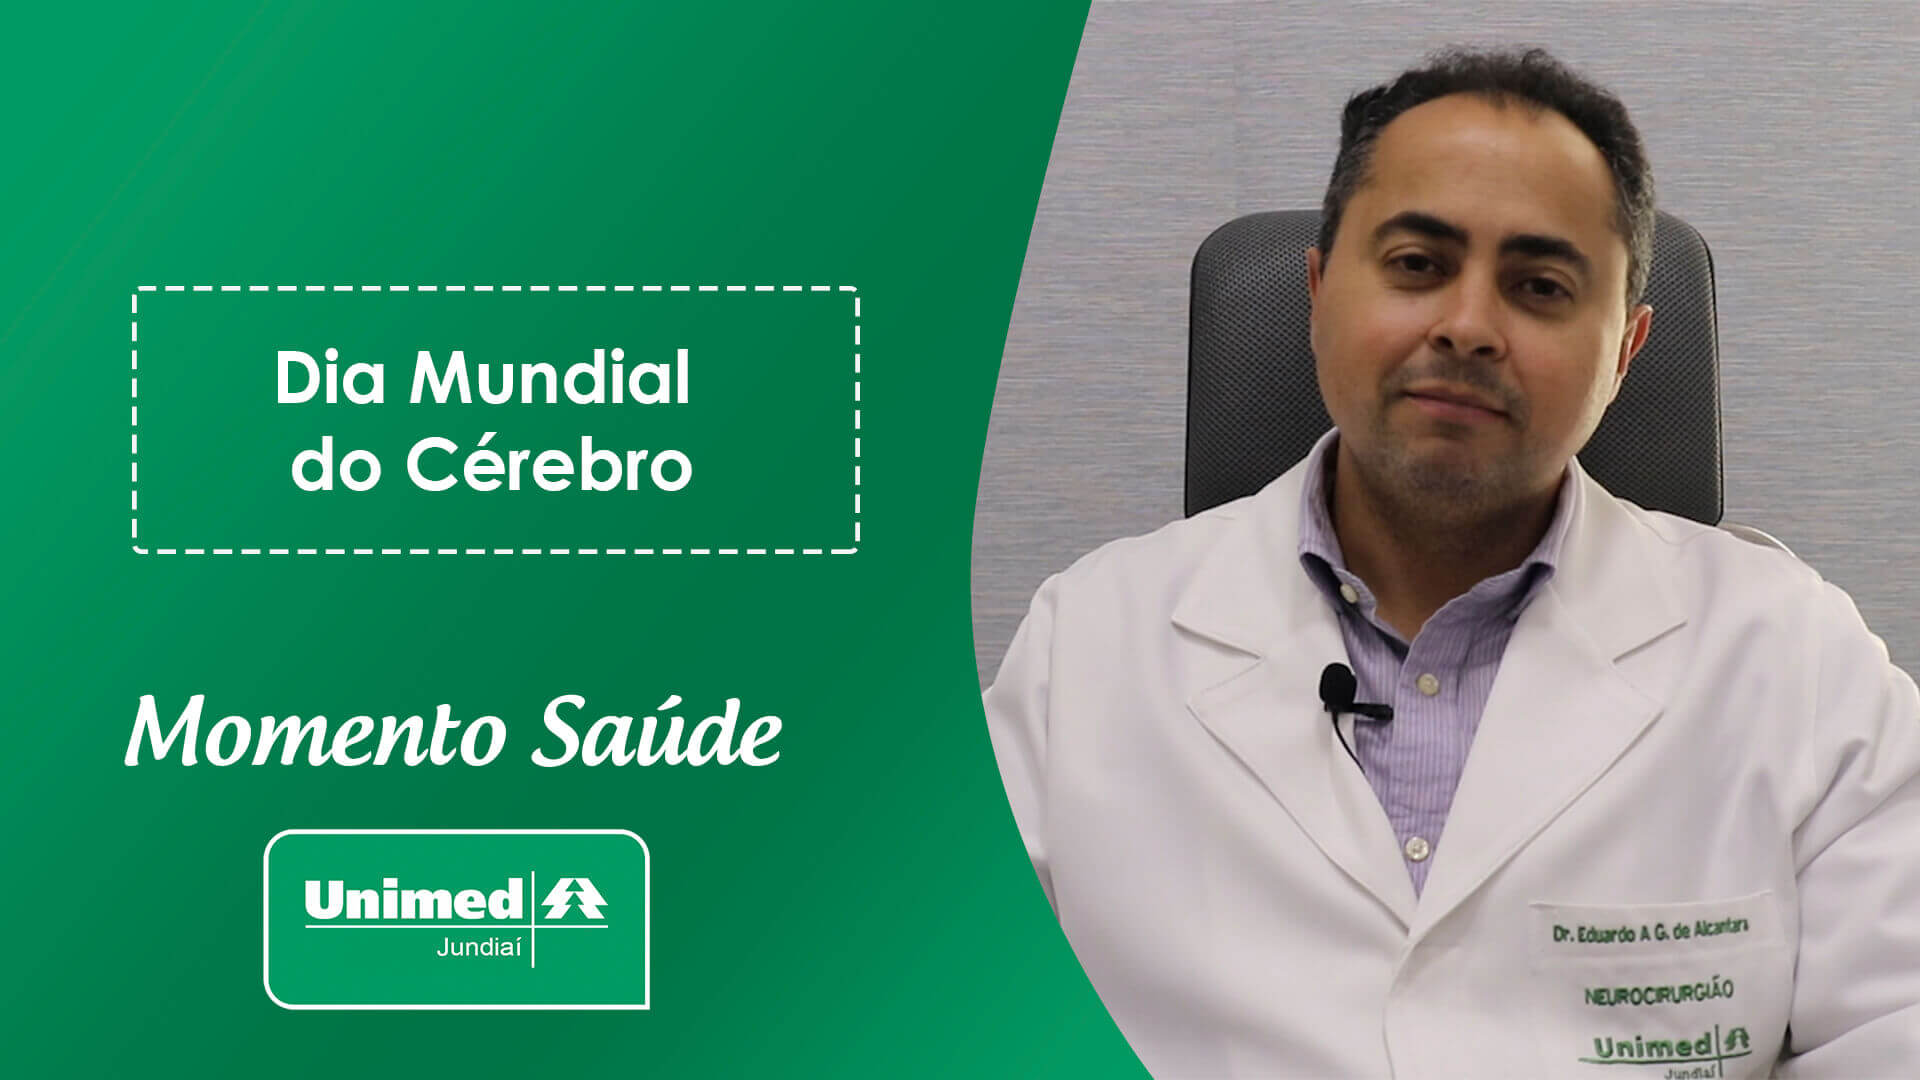 Thumb de vídeo da Unimed com médica em fundo verde